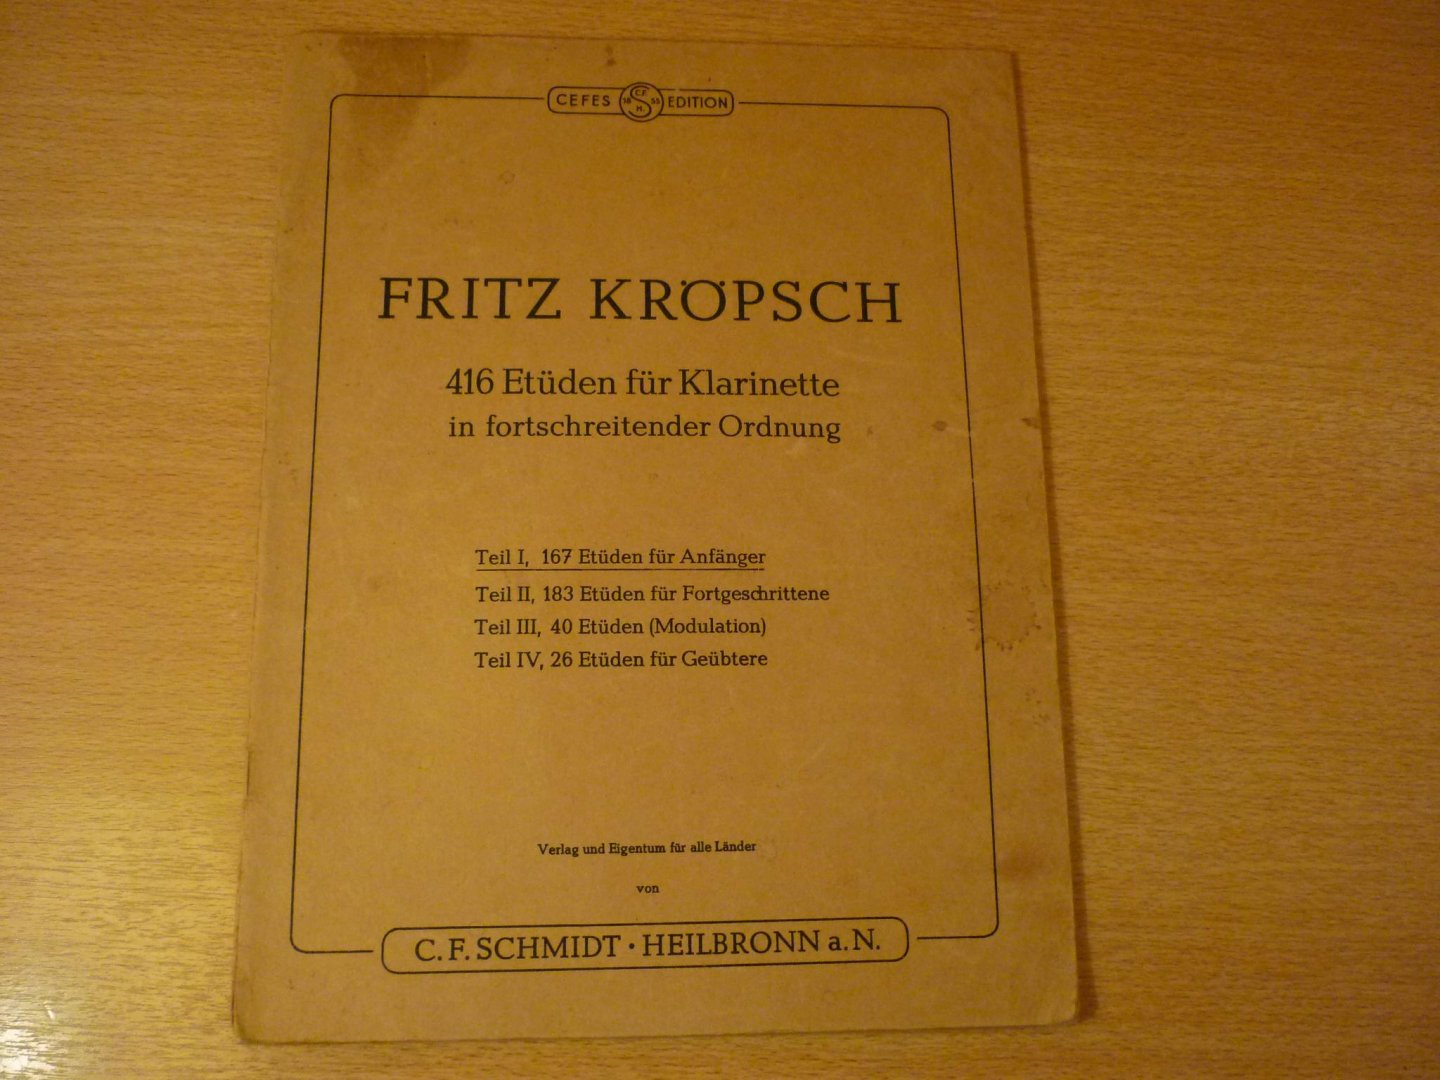 Kropsch; Fritz - 416 Etuden fur Klarinette; in fortschreitender Ordnung - Etüden für Anfänger - Deel I